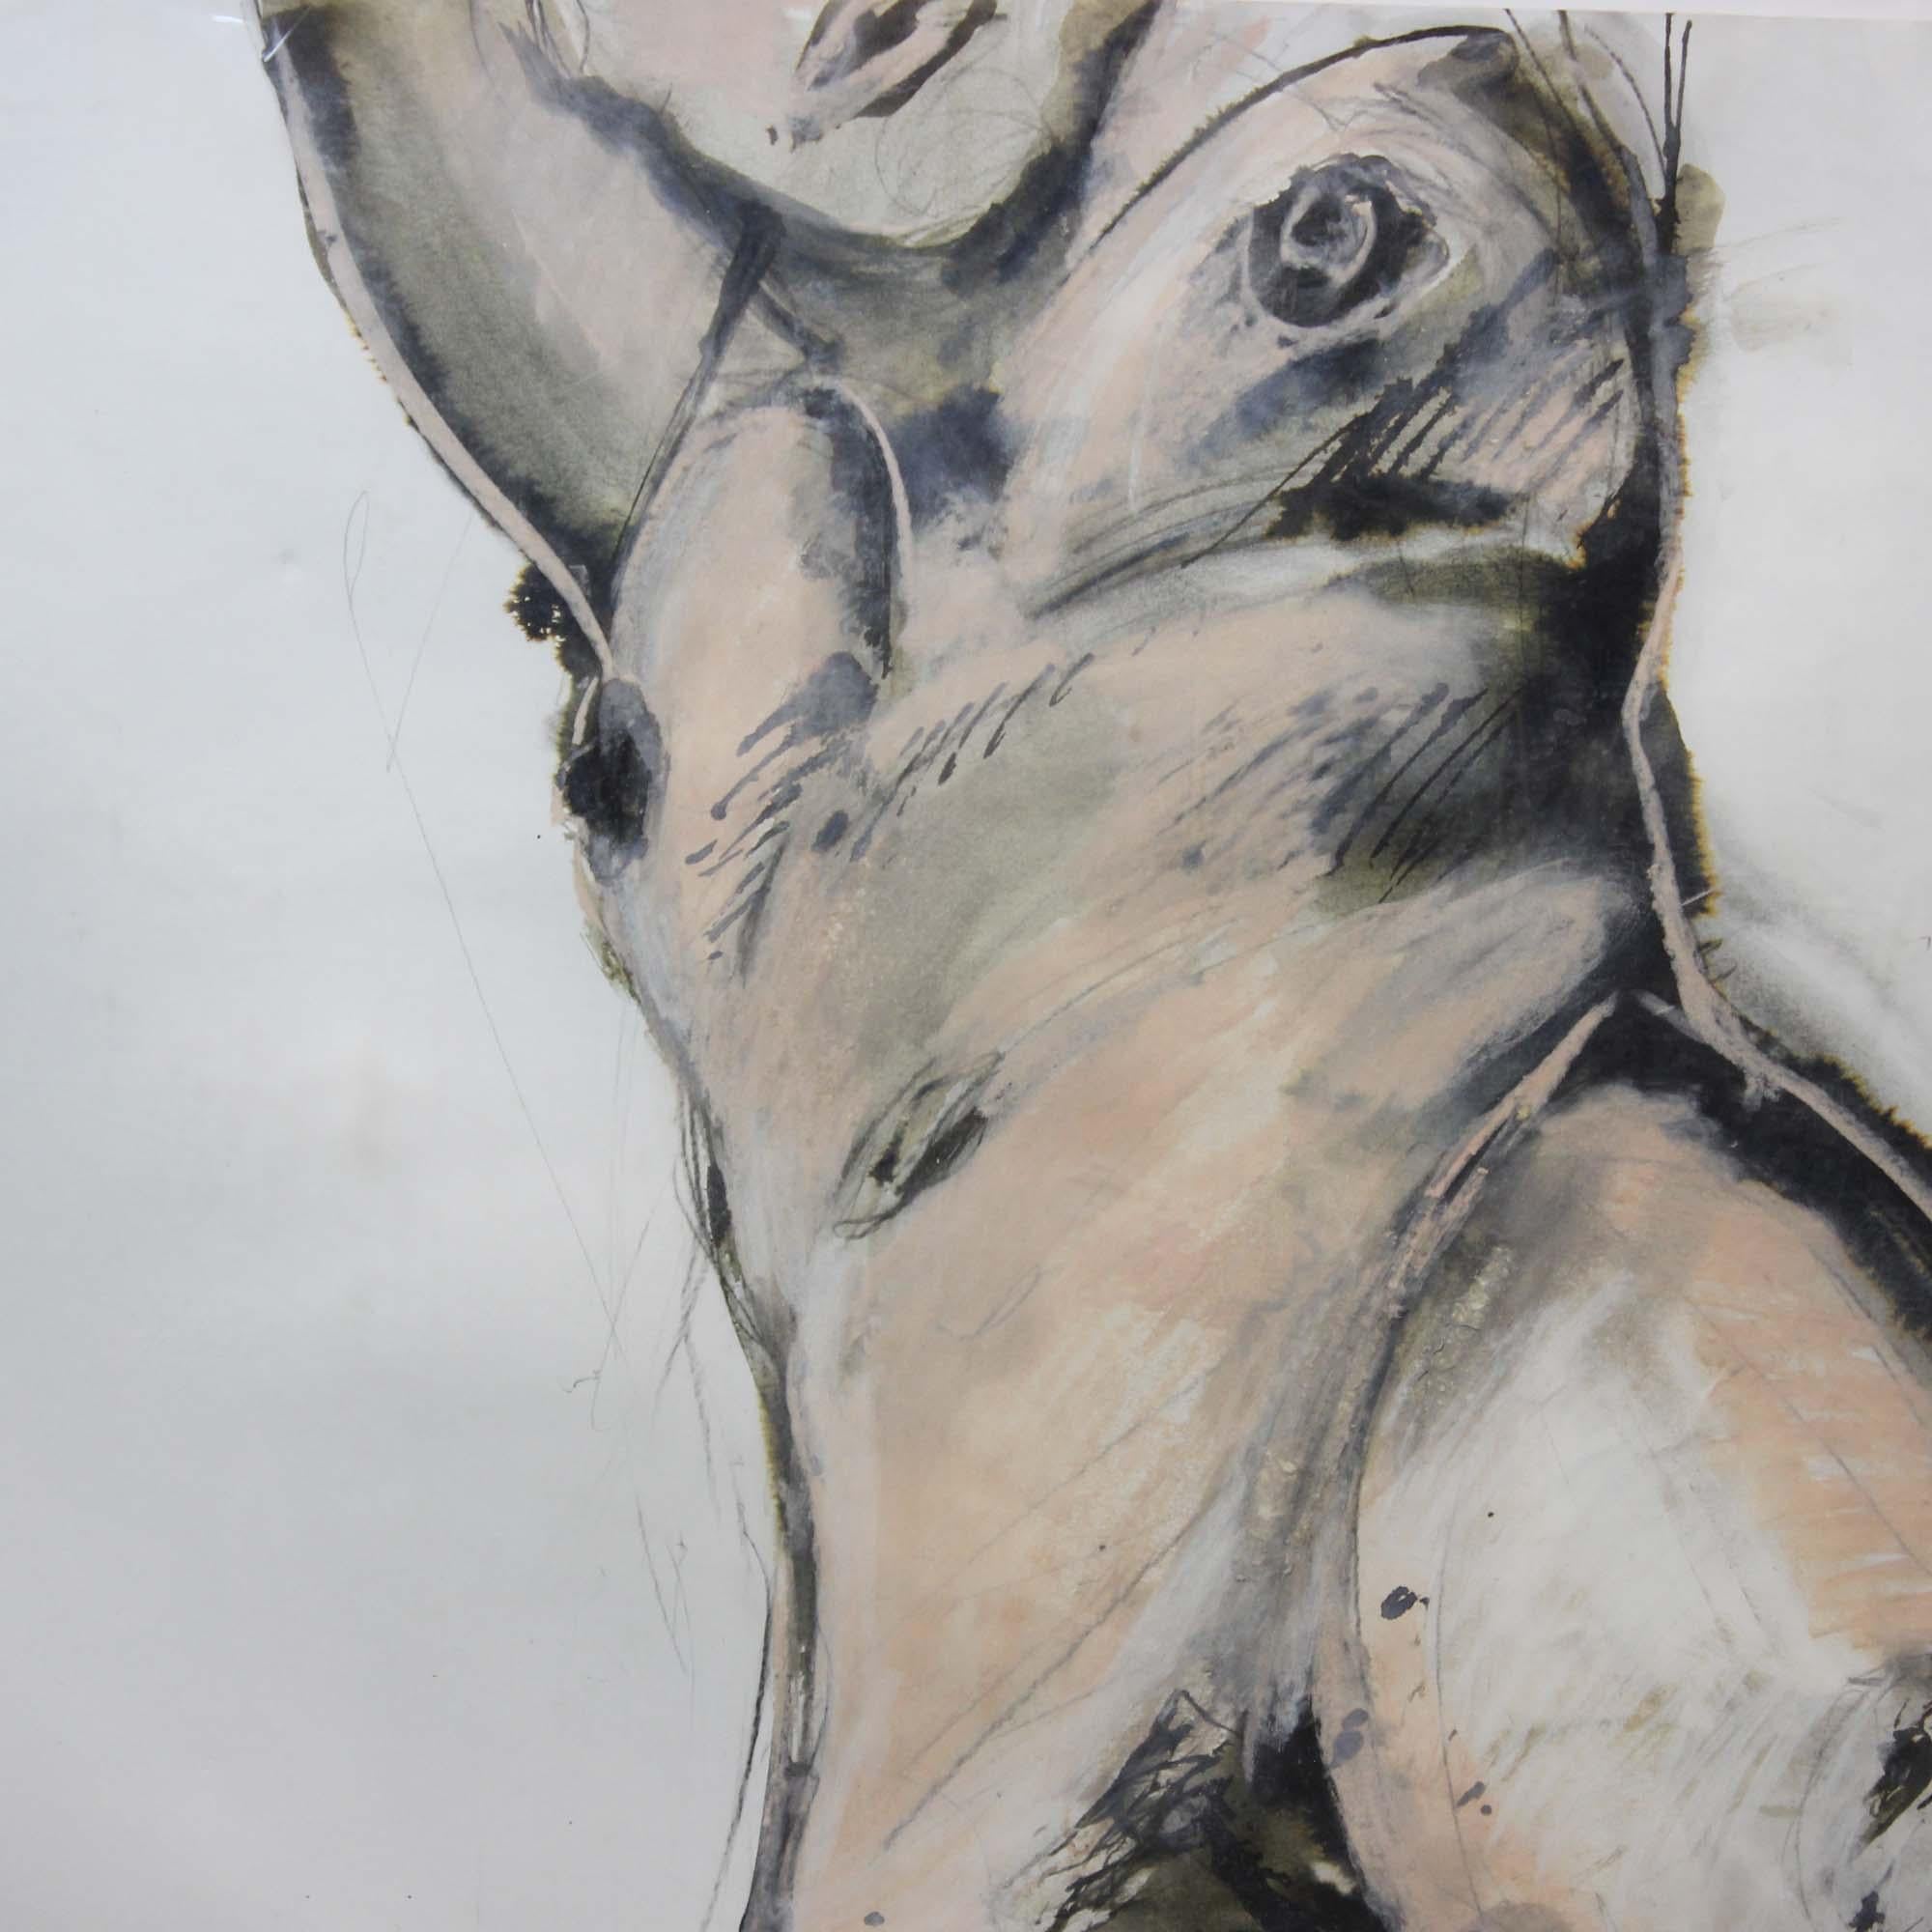 Lewis Evany artiste peinture gouache ' Femme nue'.
Signé à la main dans le coin droit.

Dimensions :
Longueur x Largeur : 71 x 100 cm 
Longueur x largeur x profondeur : 71 x 100 x 0,5 cm 

Poids approximatif : 1 KG
 
Condit : Usage général,